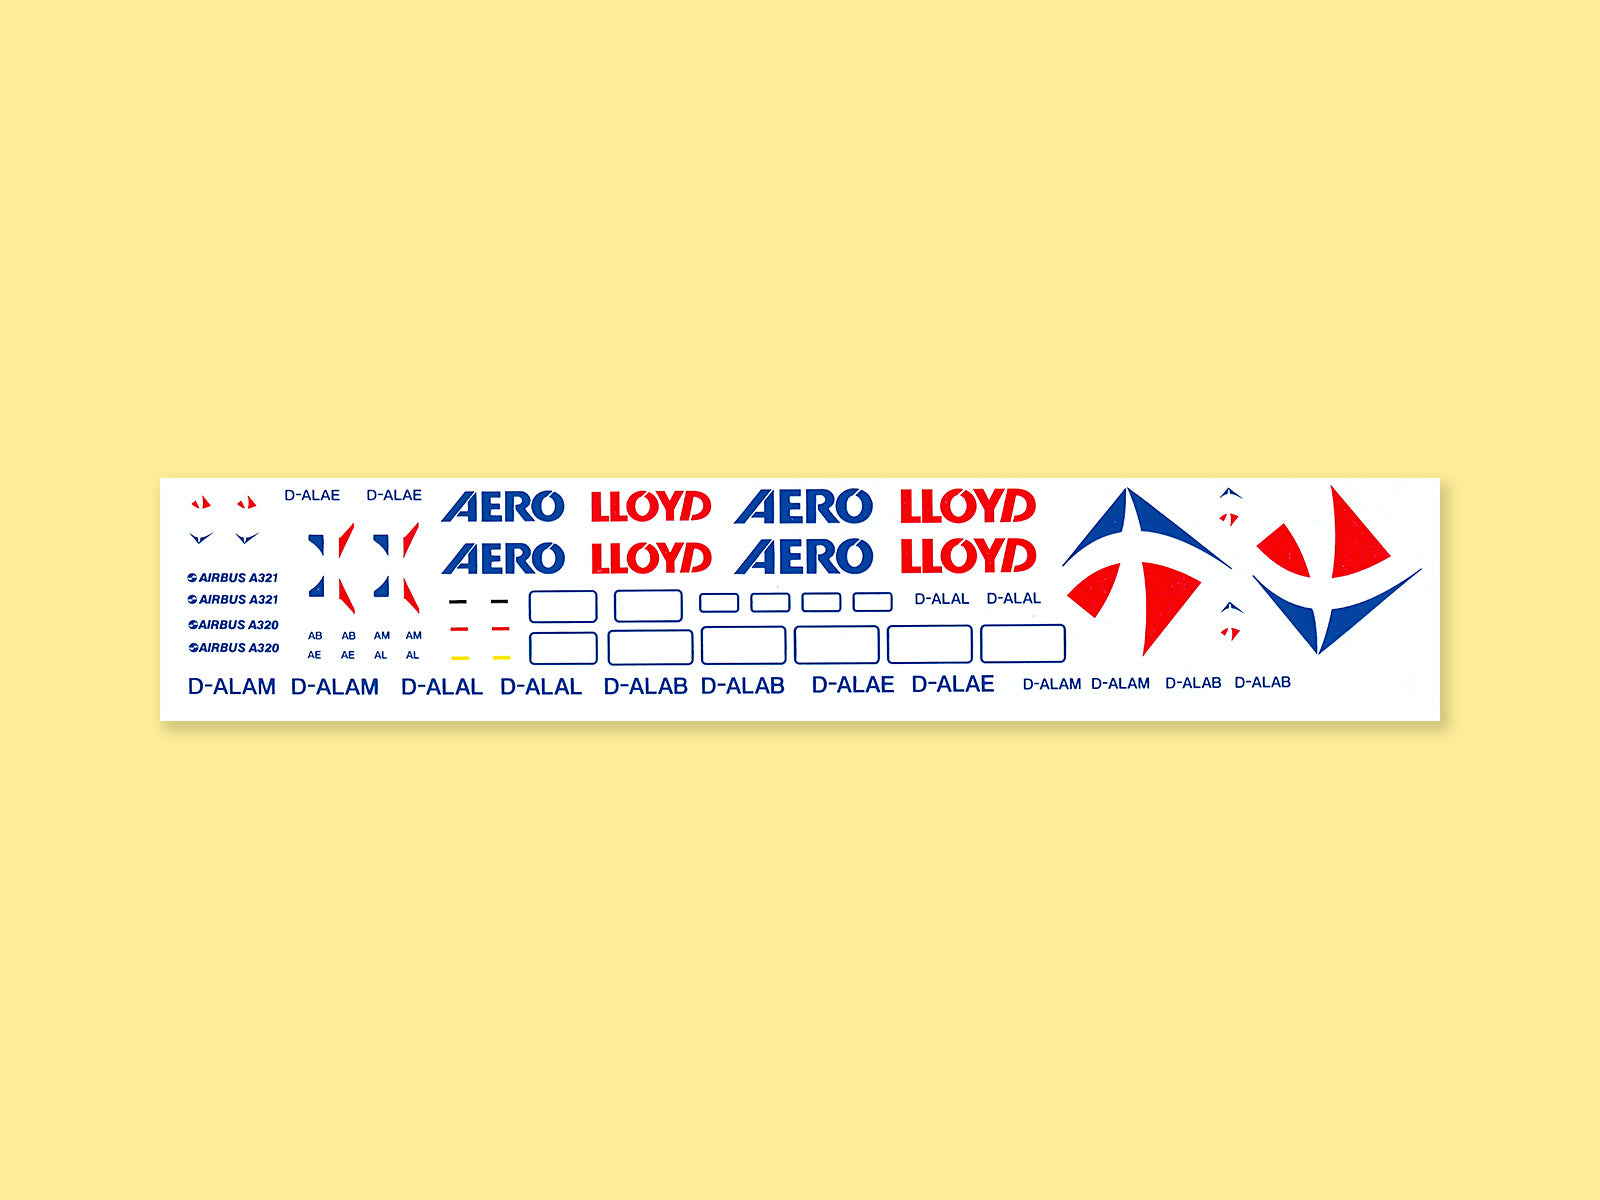 "AERO LLOYD" Airbus A 320-200 / A 321